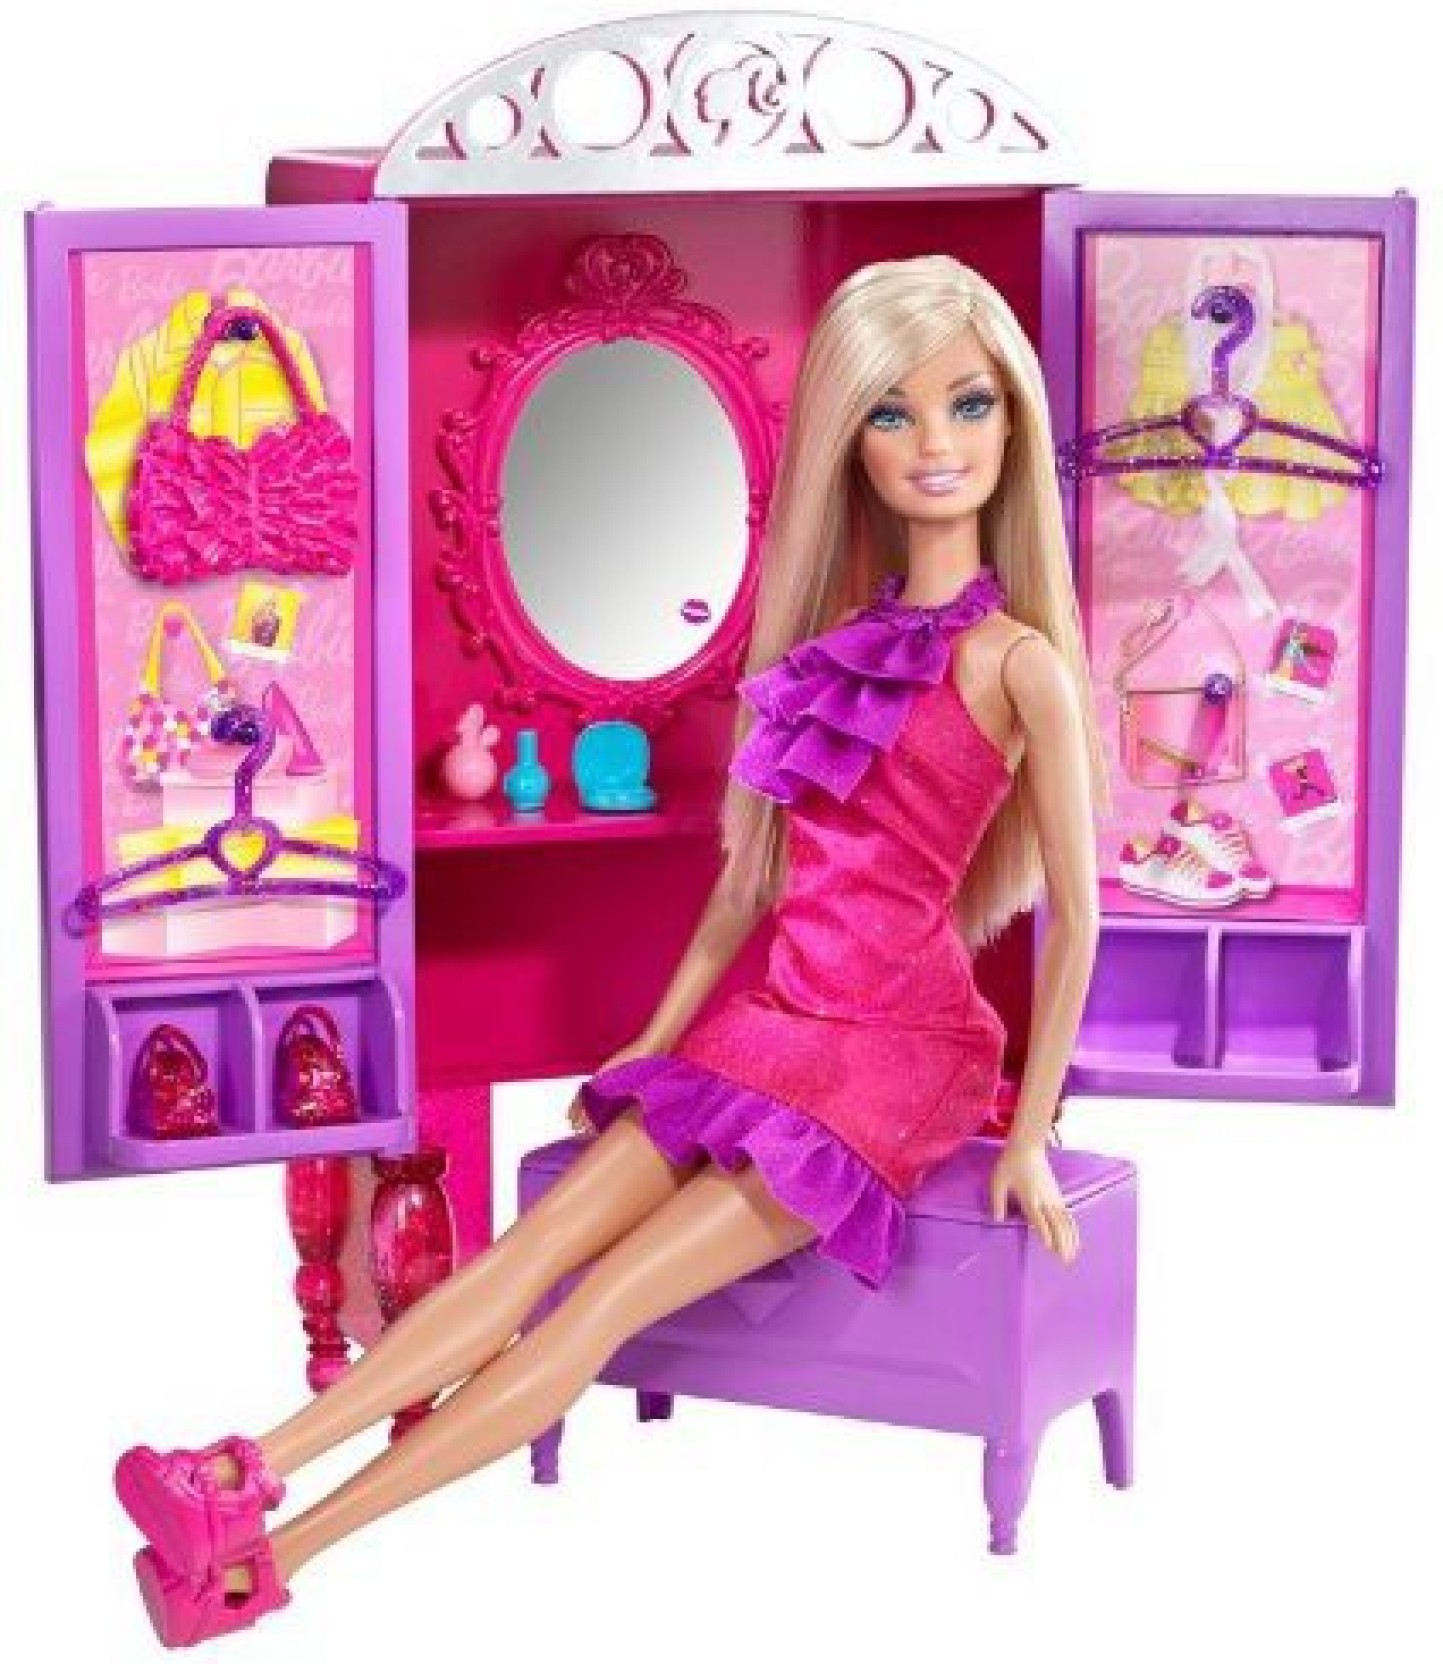 Барби 8 лет. Кукла Барби. Куклы Барби наборы. Игрушки для девочек куклы Барби. Куклы для девочек Барби.